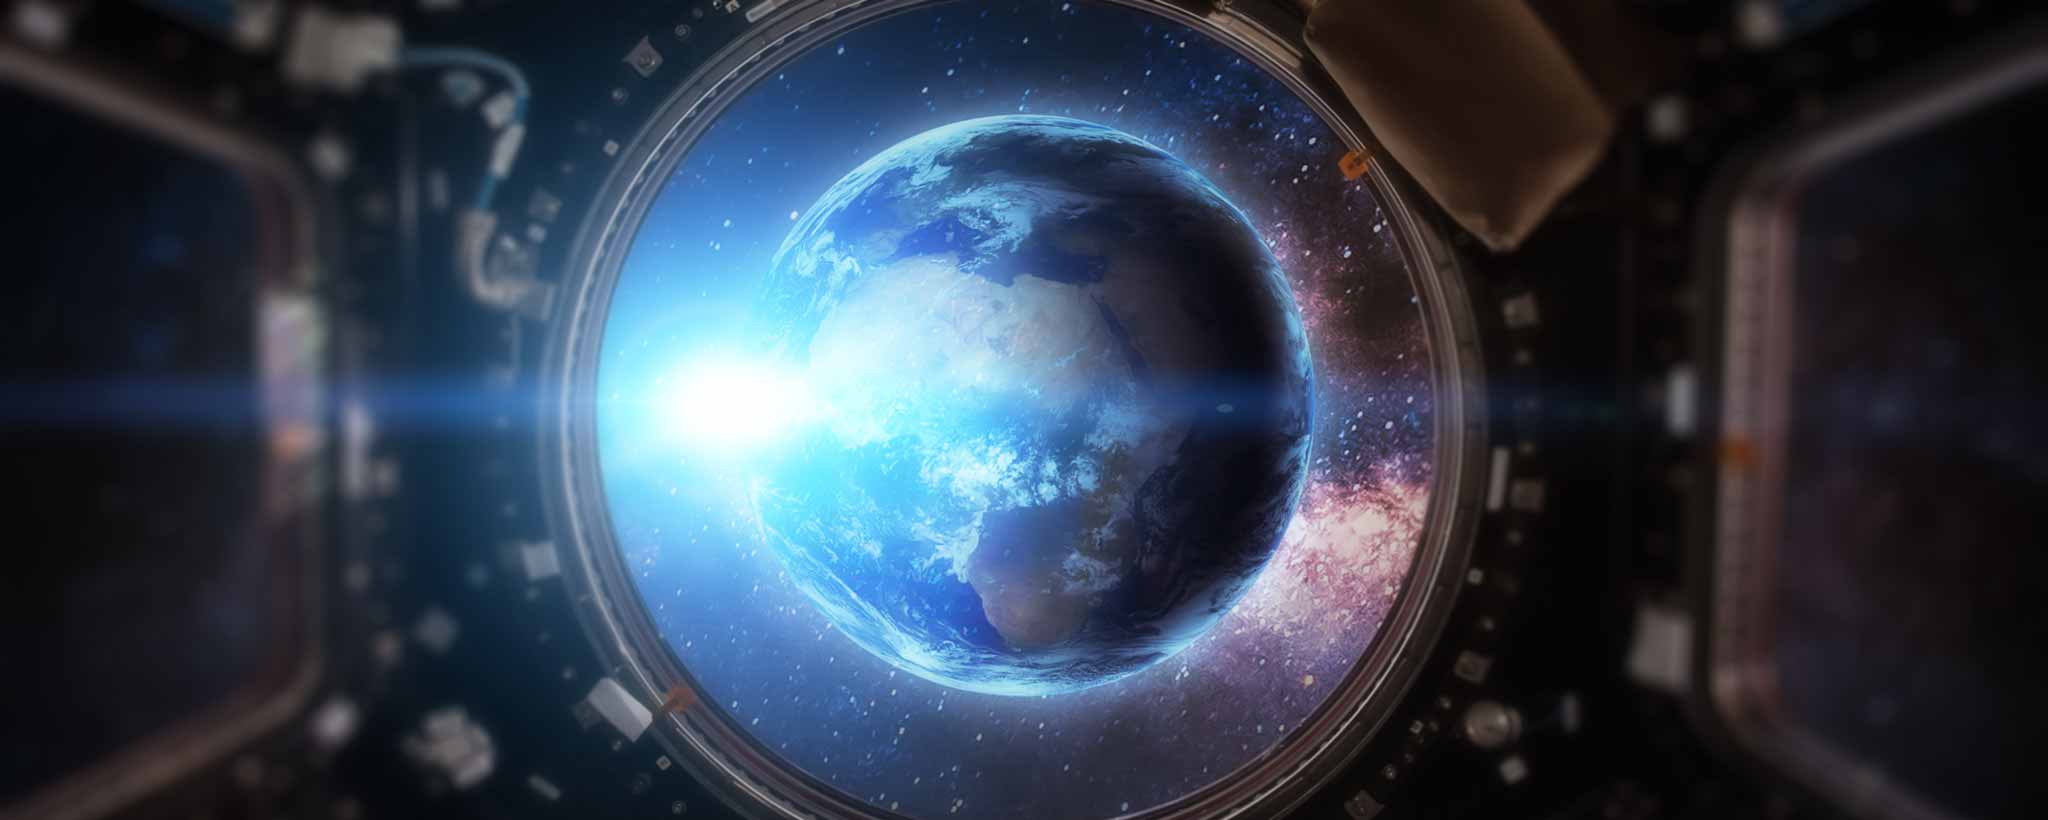 'Earth through spacecraft portal'